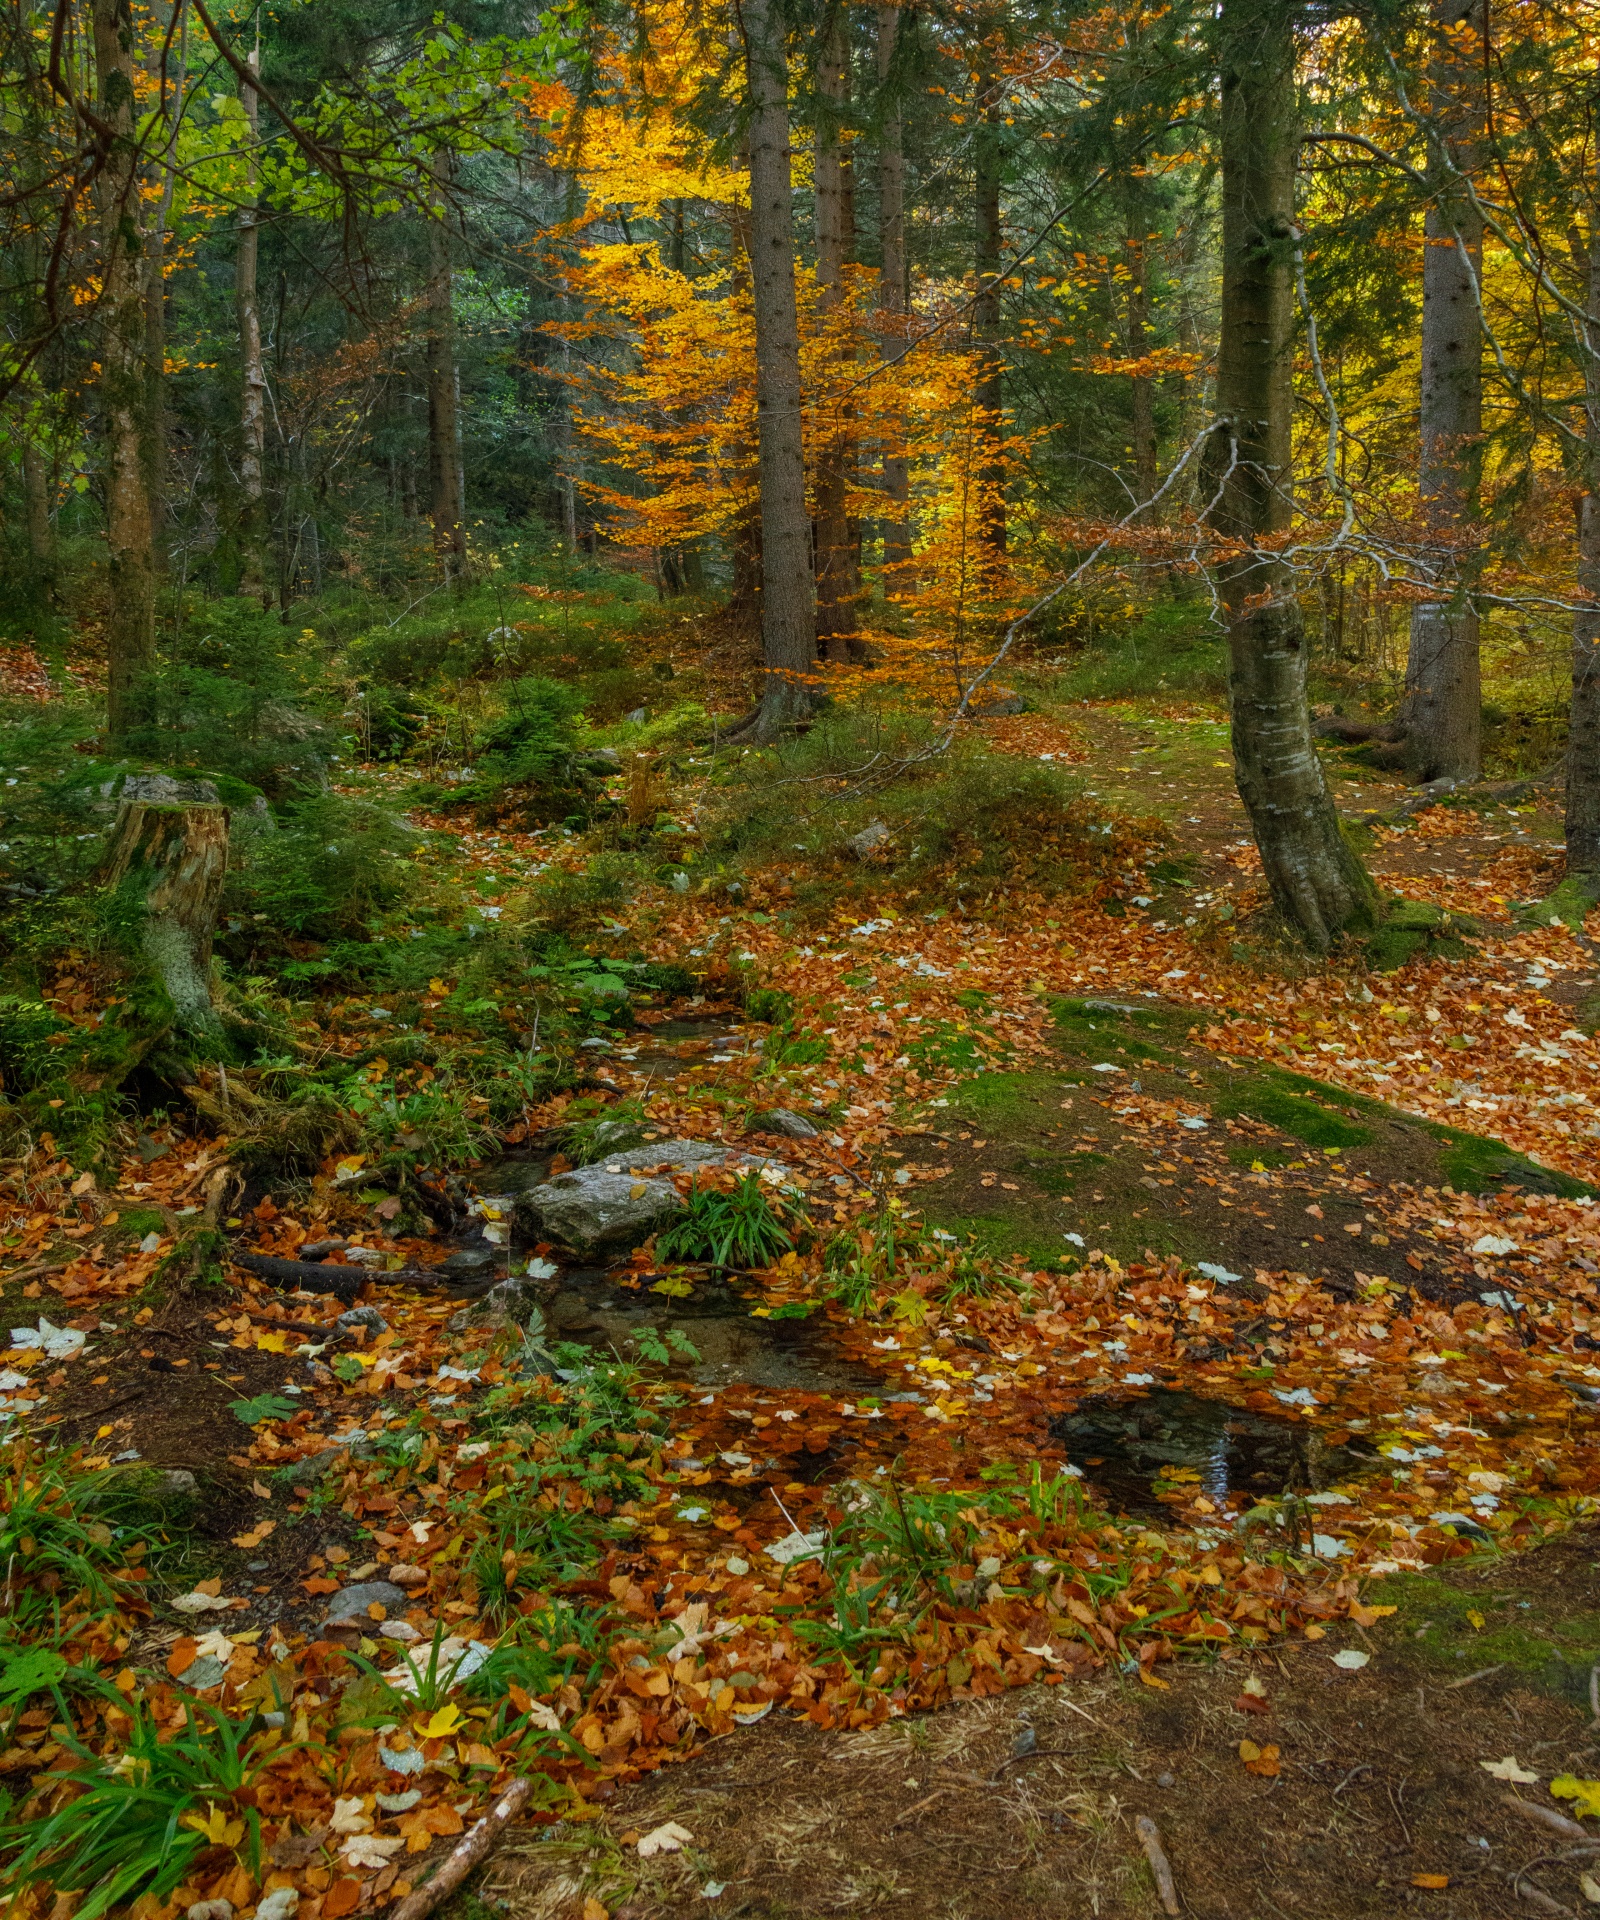 壁纸1280×1024森林里的秋天 色彩绚丽的森林图片壁纸,秋色无限-森林里的秋天壁纸壁纸图片-风景壁纸-风景图片素材-桌面壁纸